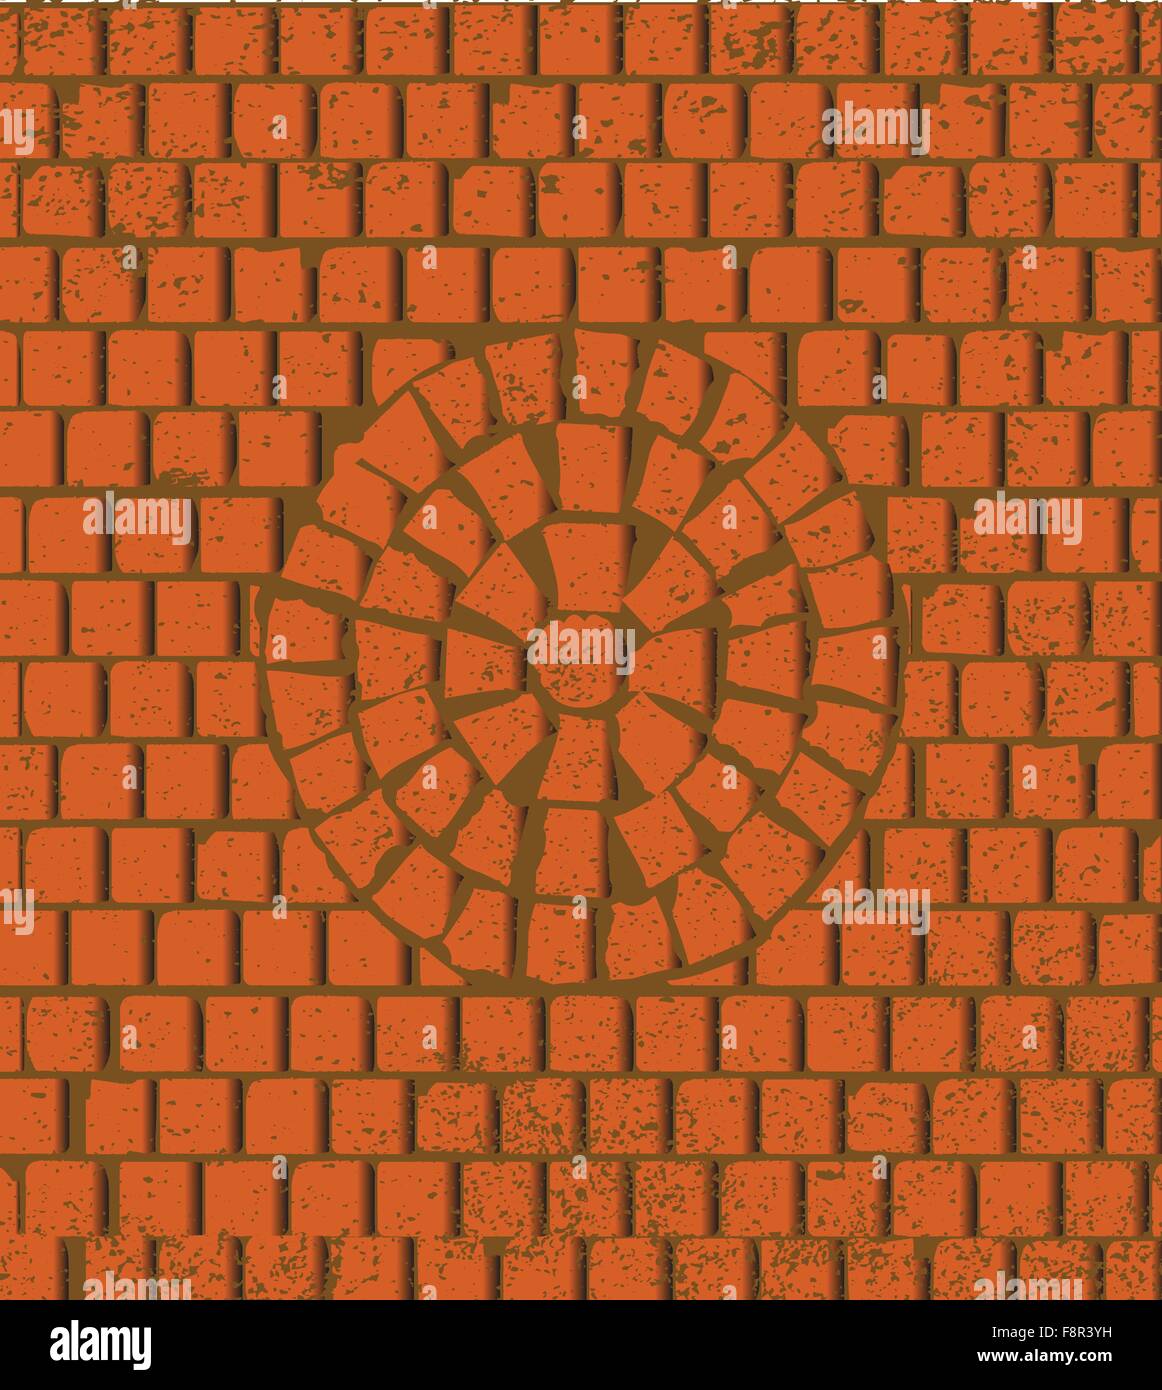 A circular red brick wall pattern Stock Vector